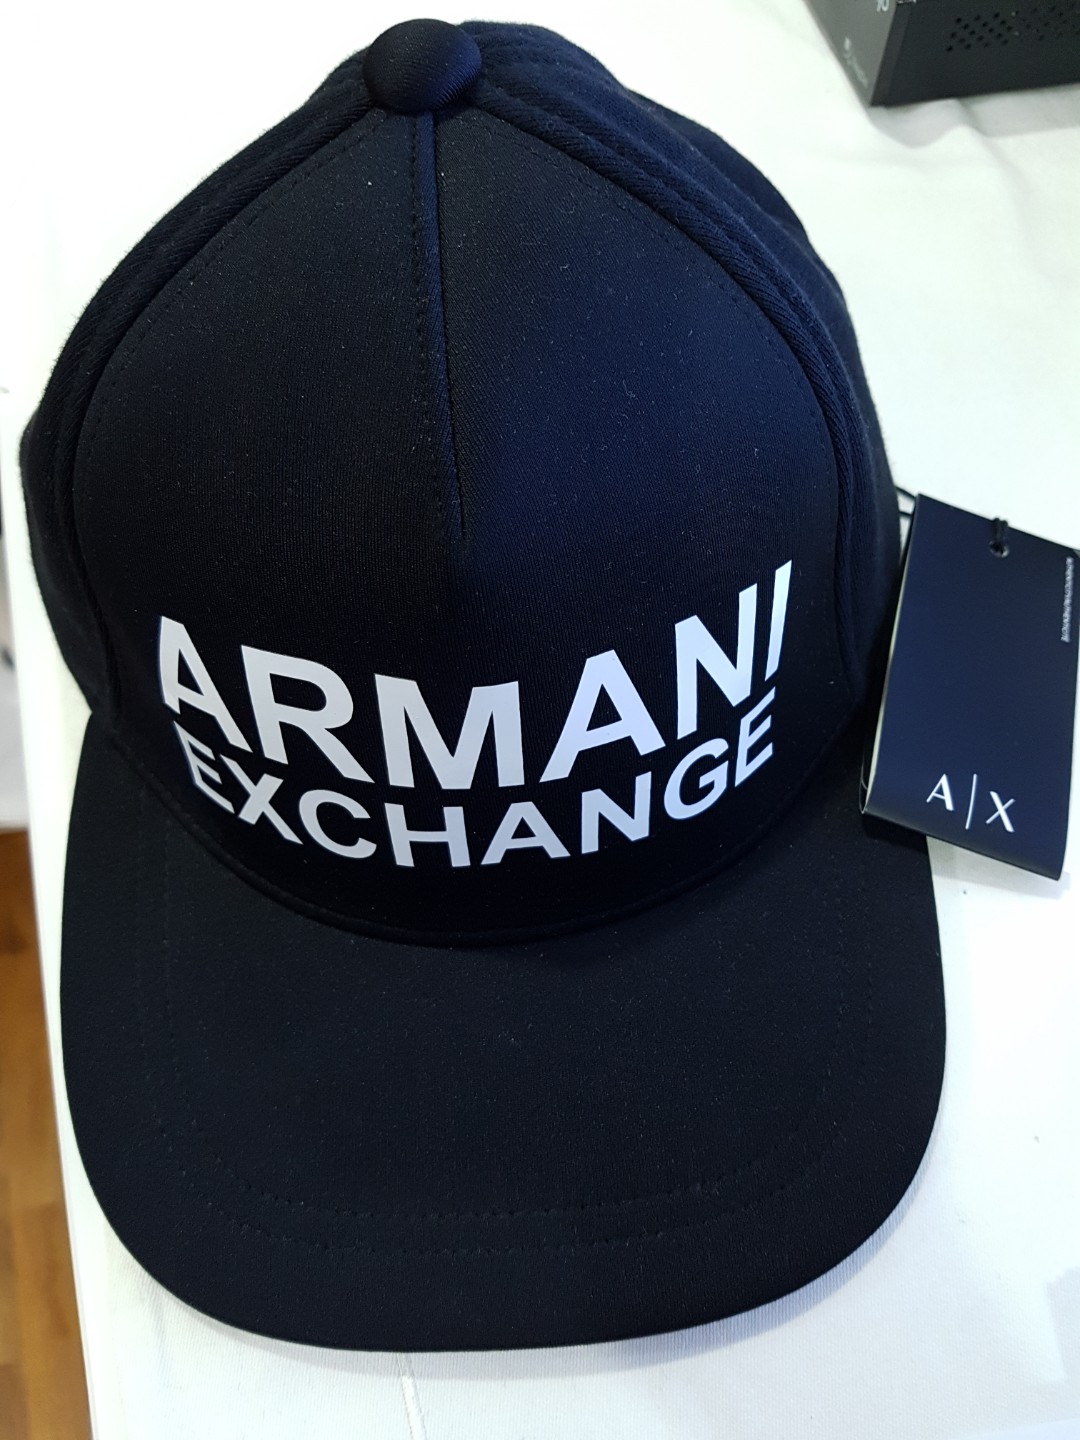 armani exchange cap